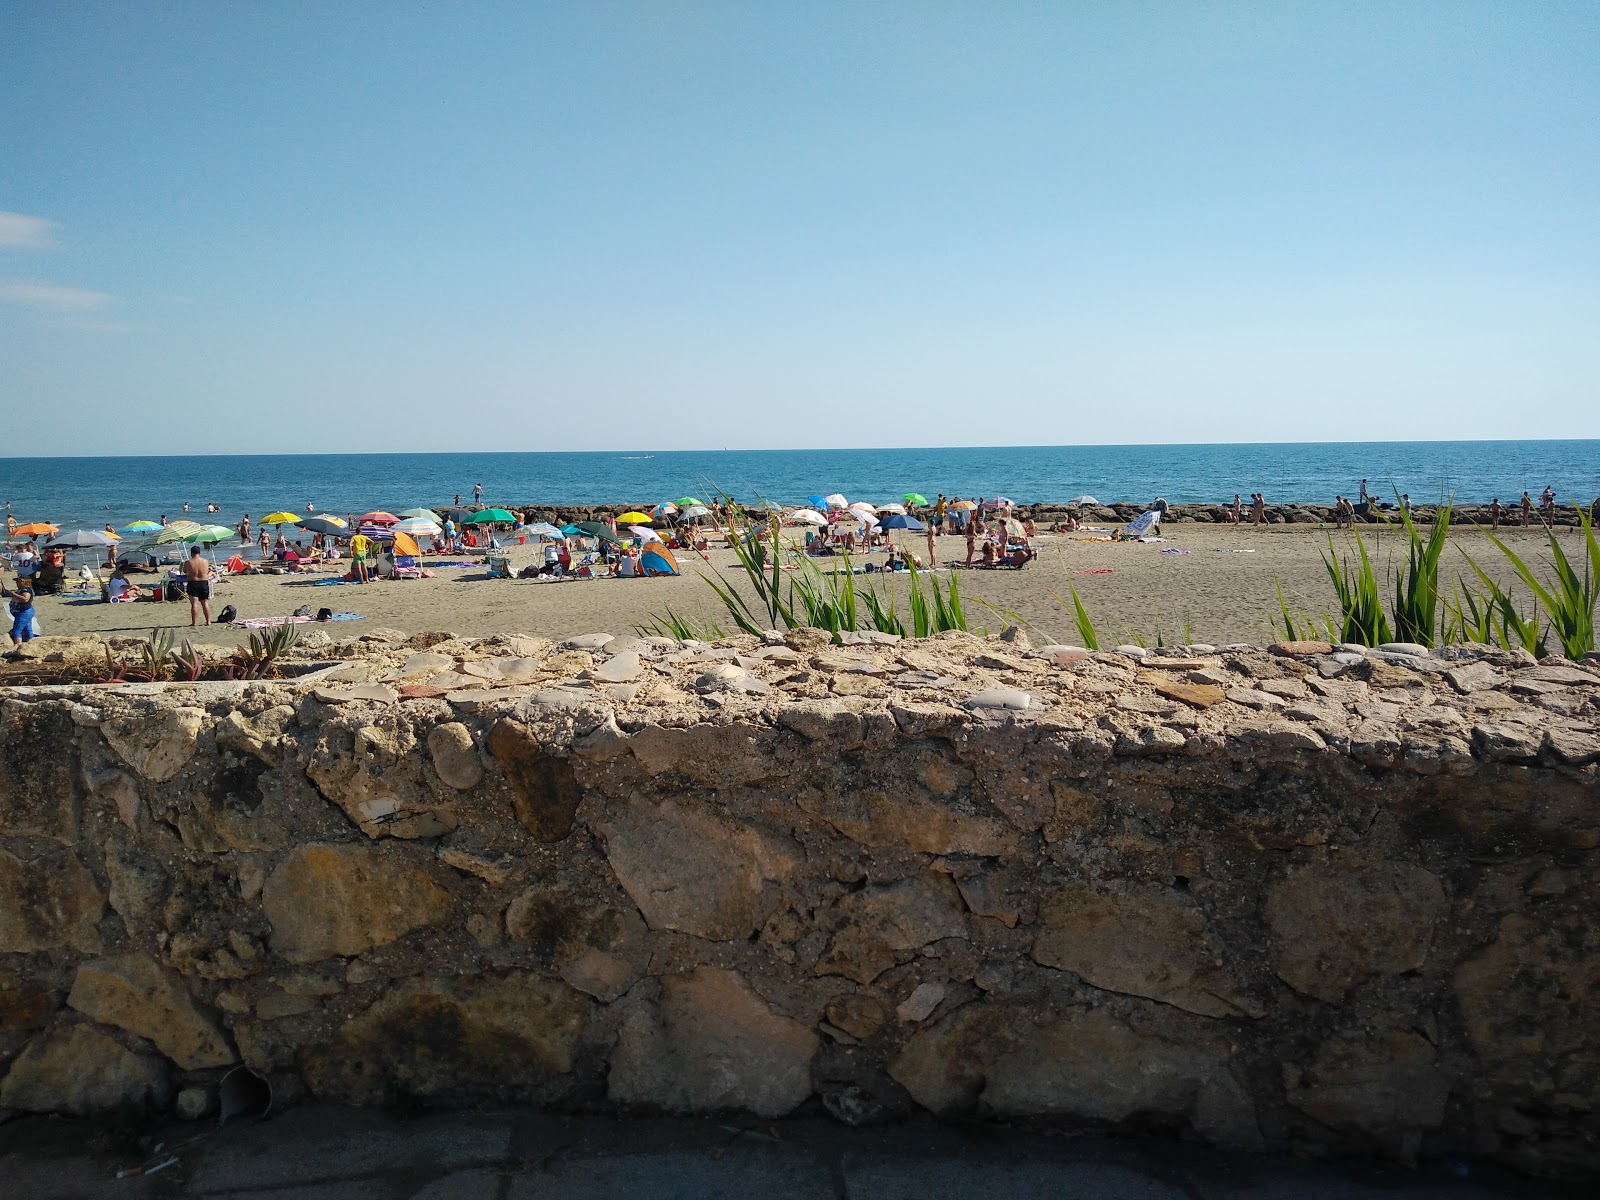 Photo de Il Castello beach - endroit populaire parmi les connaisseurs de la détente